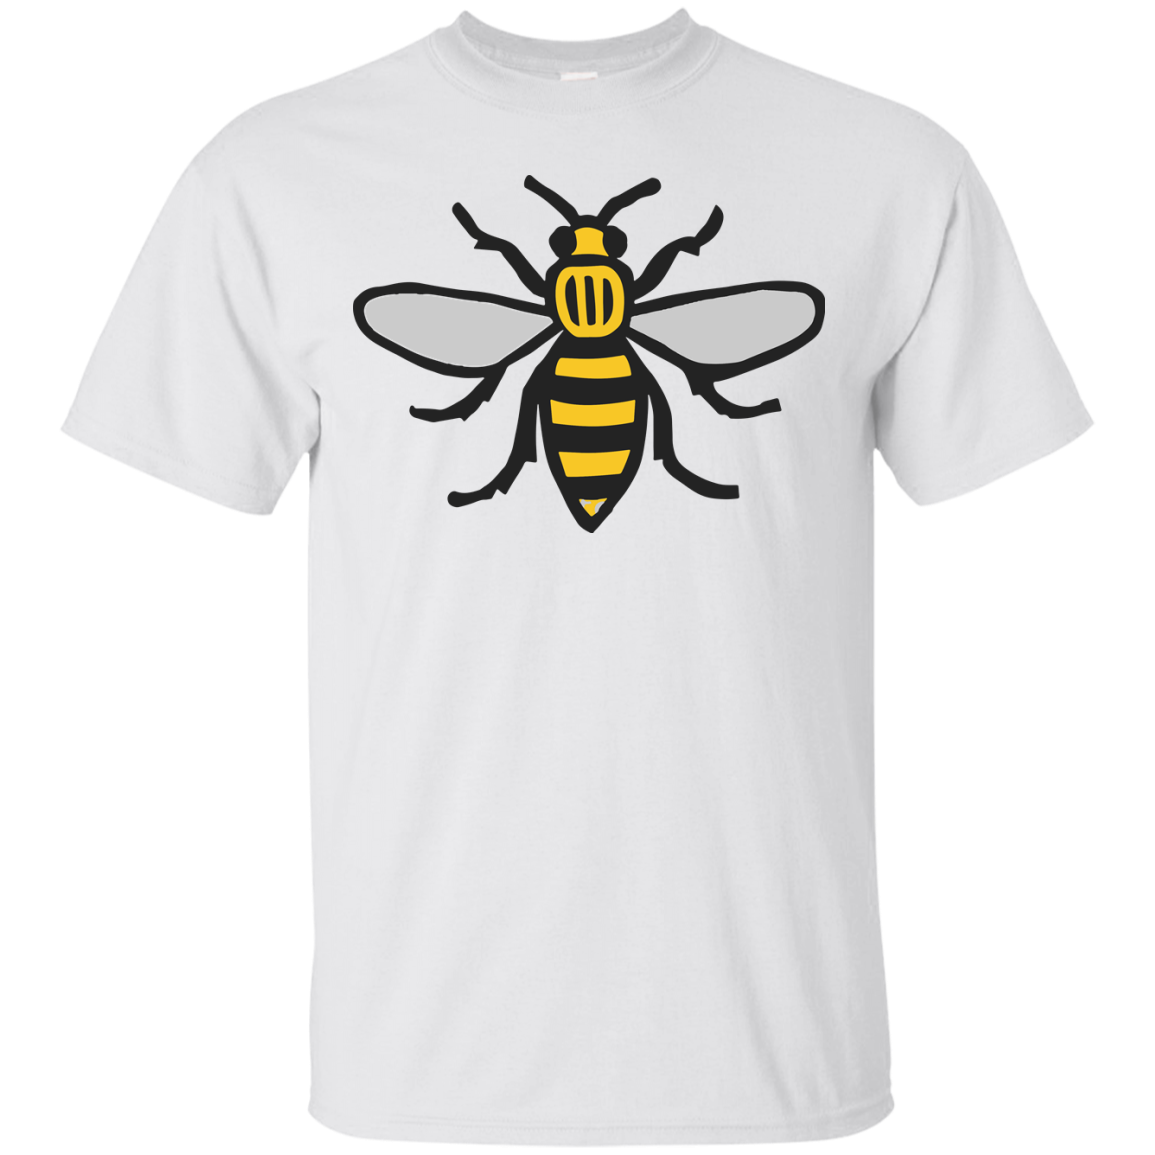 Футболка пчела. Желтая футболка с пчелой. Женская футболка пчелы. Футболка с изображением пчелы.